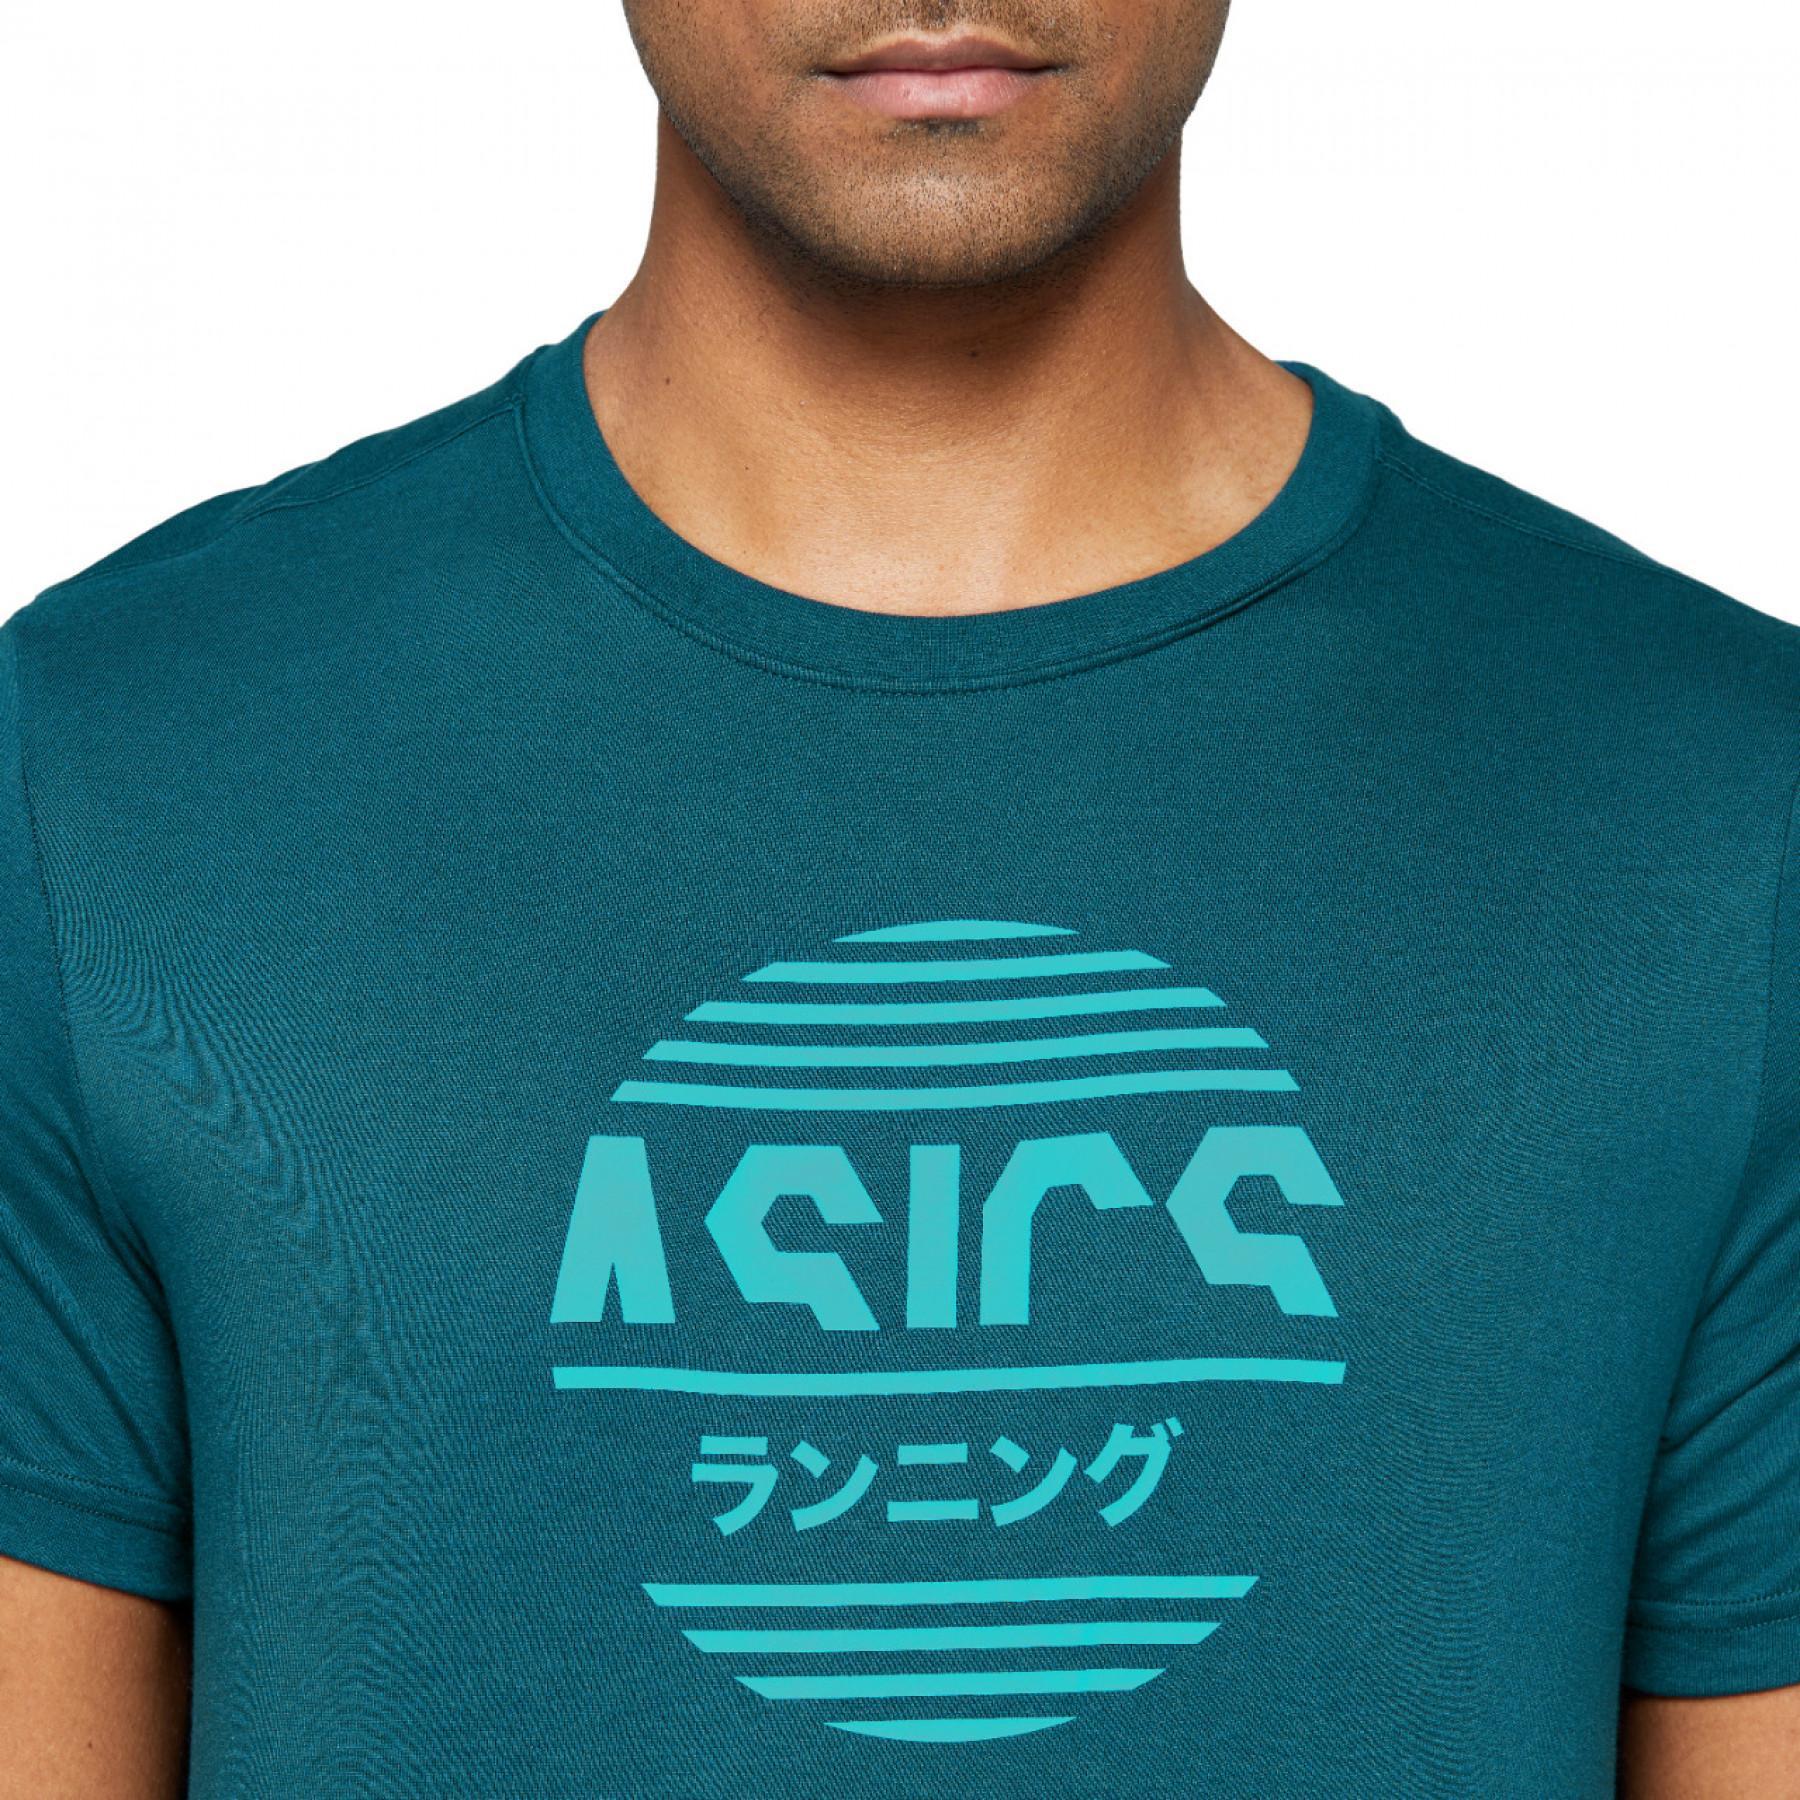 Camiseta Asics Tokyo Graphic Japan